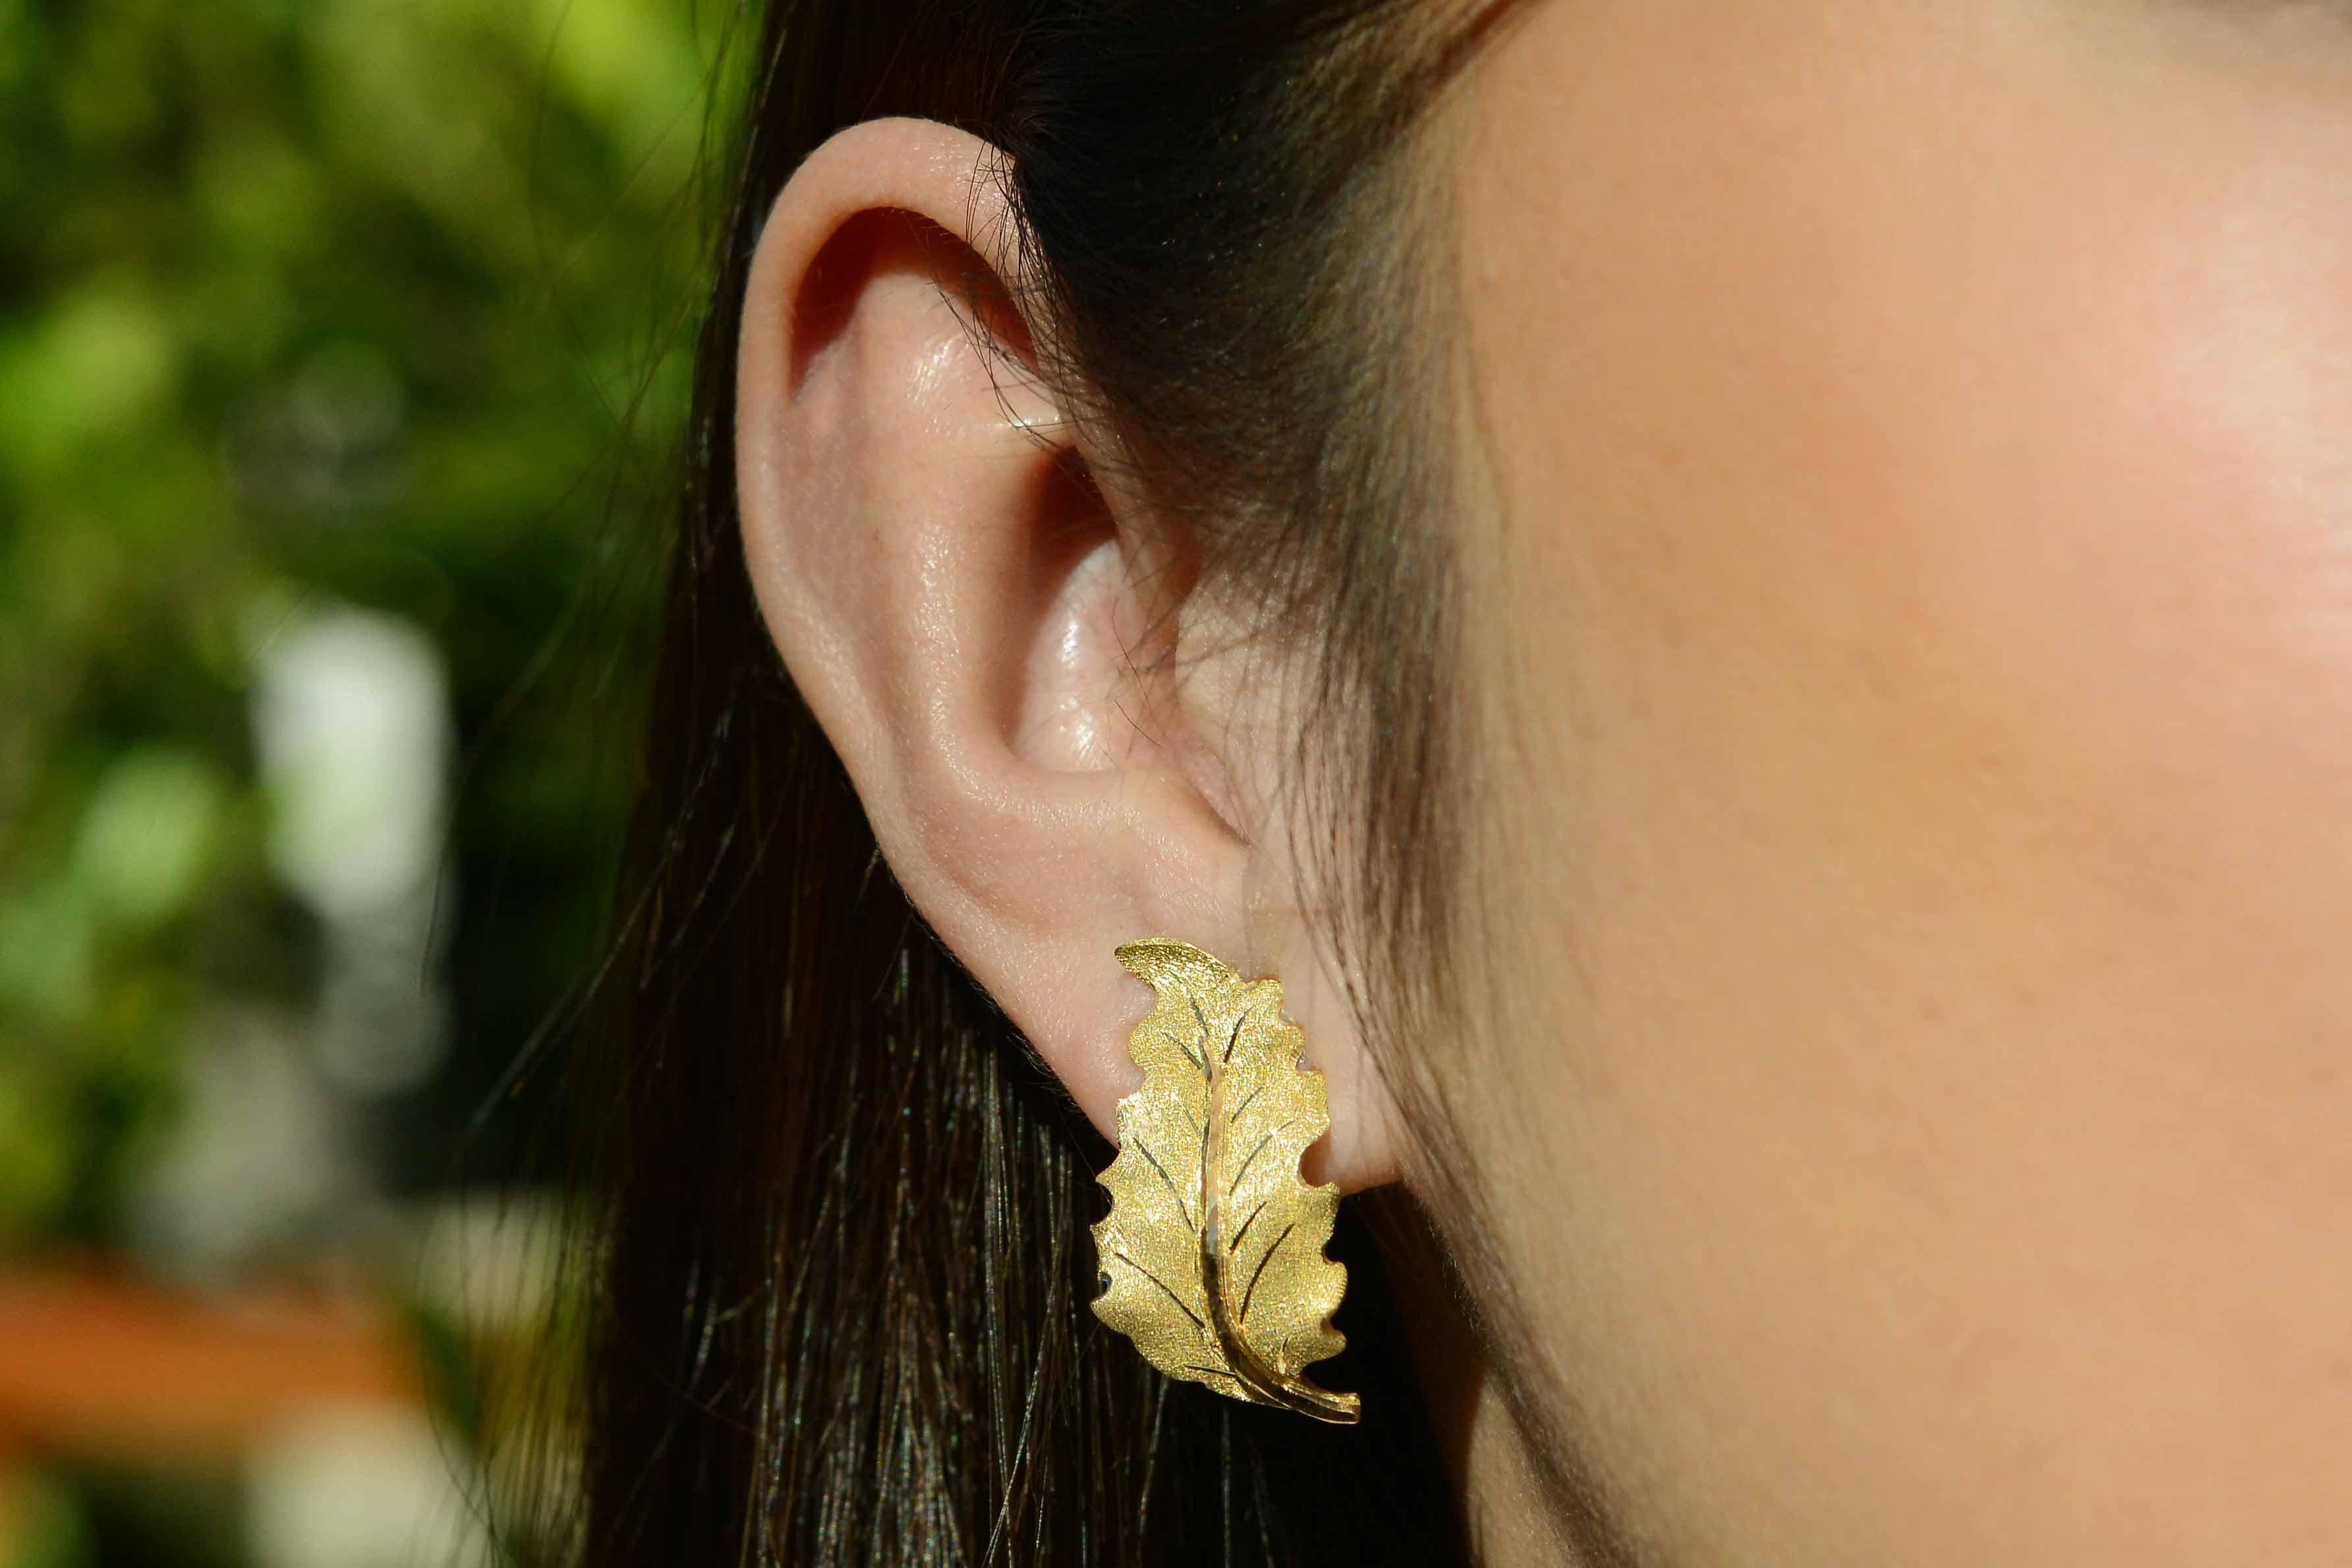 Exceptionnelle paire de boucles d'oreilles en or jaune 18 carats finement détaillées. La tige satinée est délicieusement contrastée par des feuilles d'or ressemblant à du givre et présentant l'effet de gravure caractéristique de la marque.